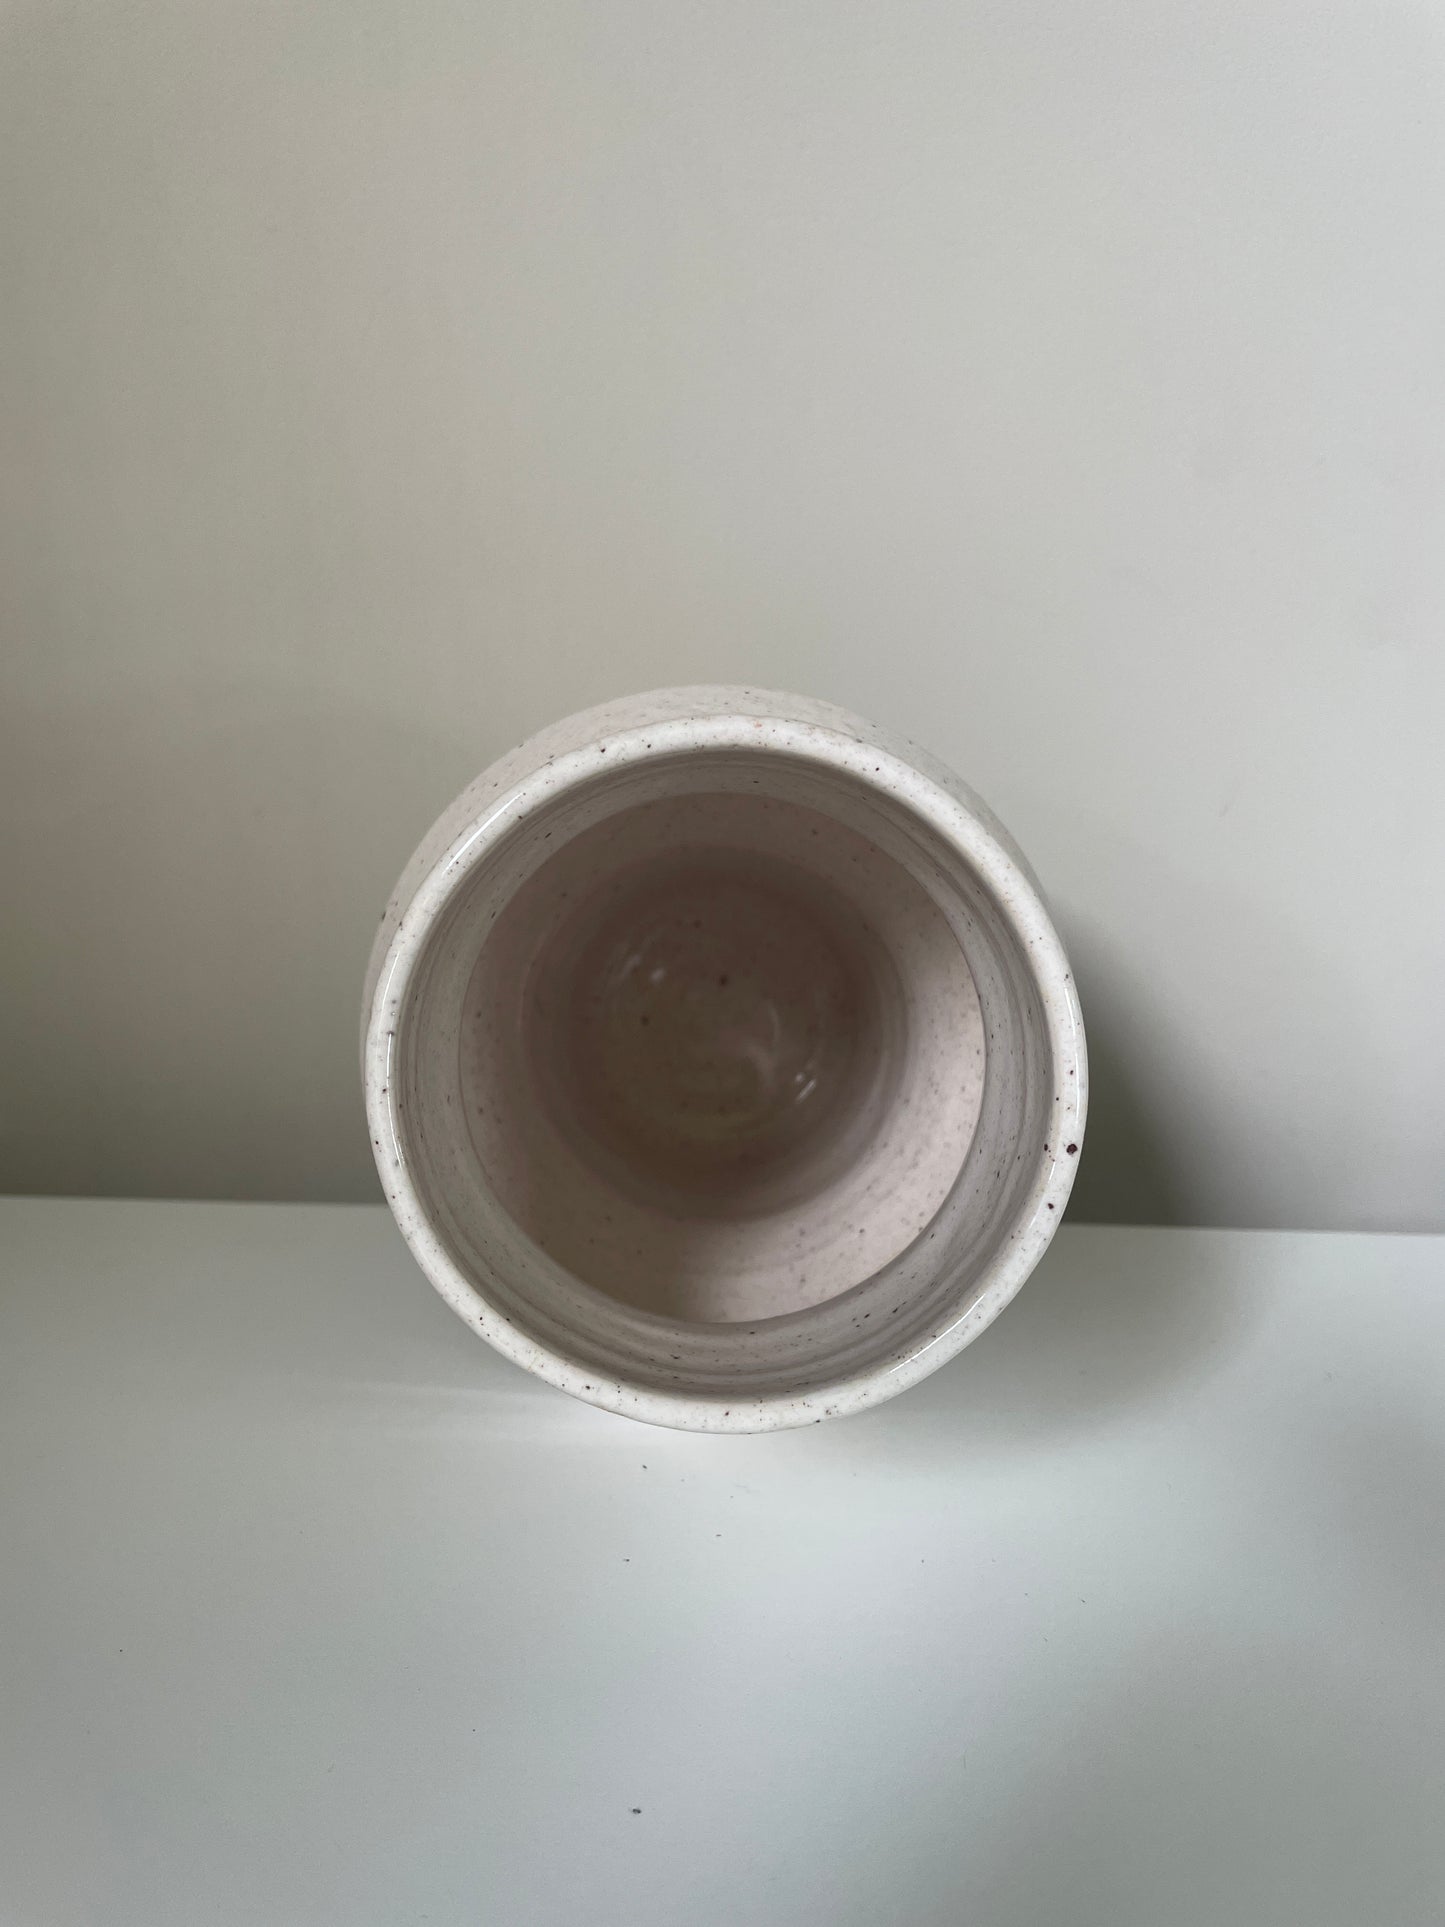 Contemporary vase #01